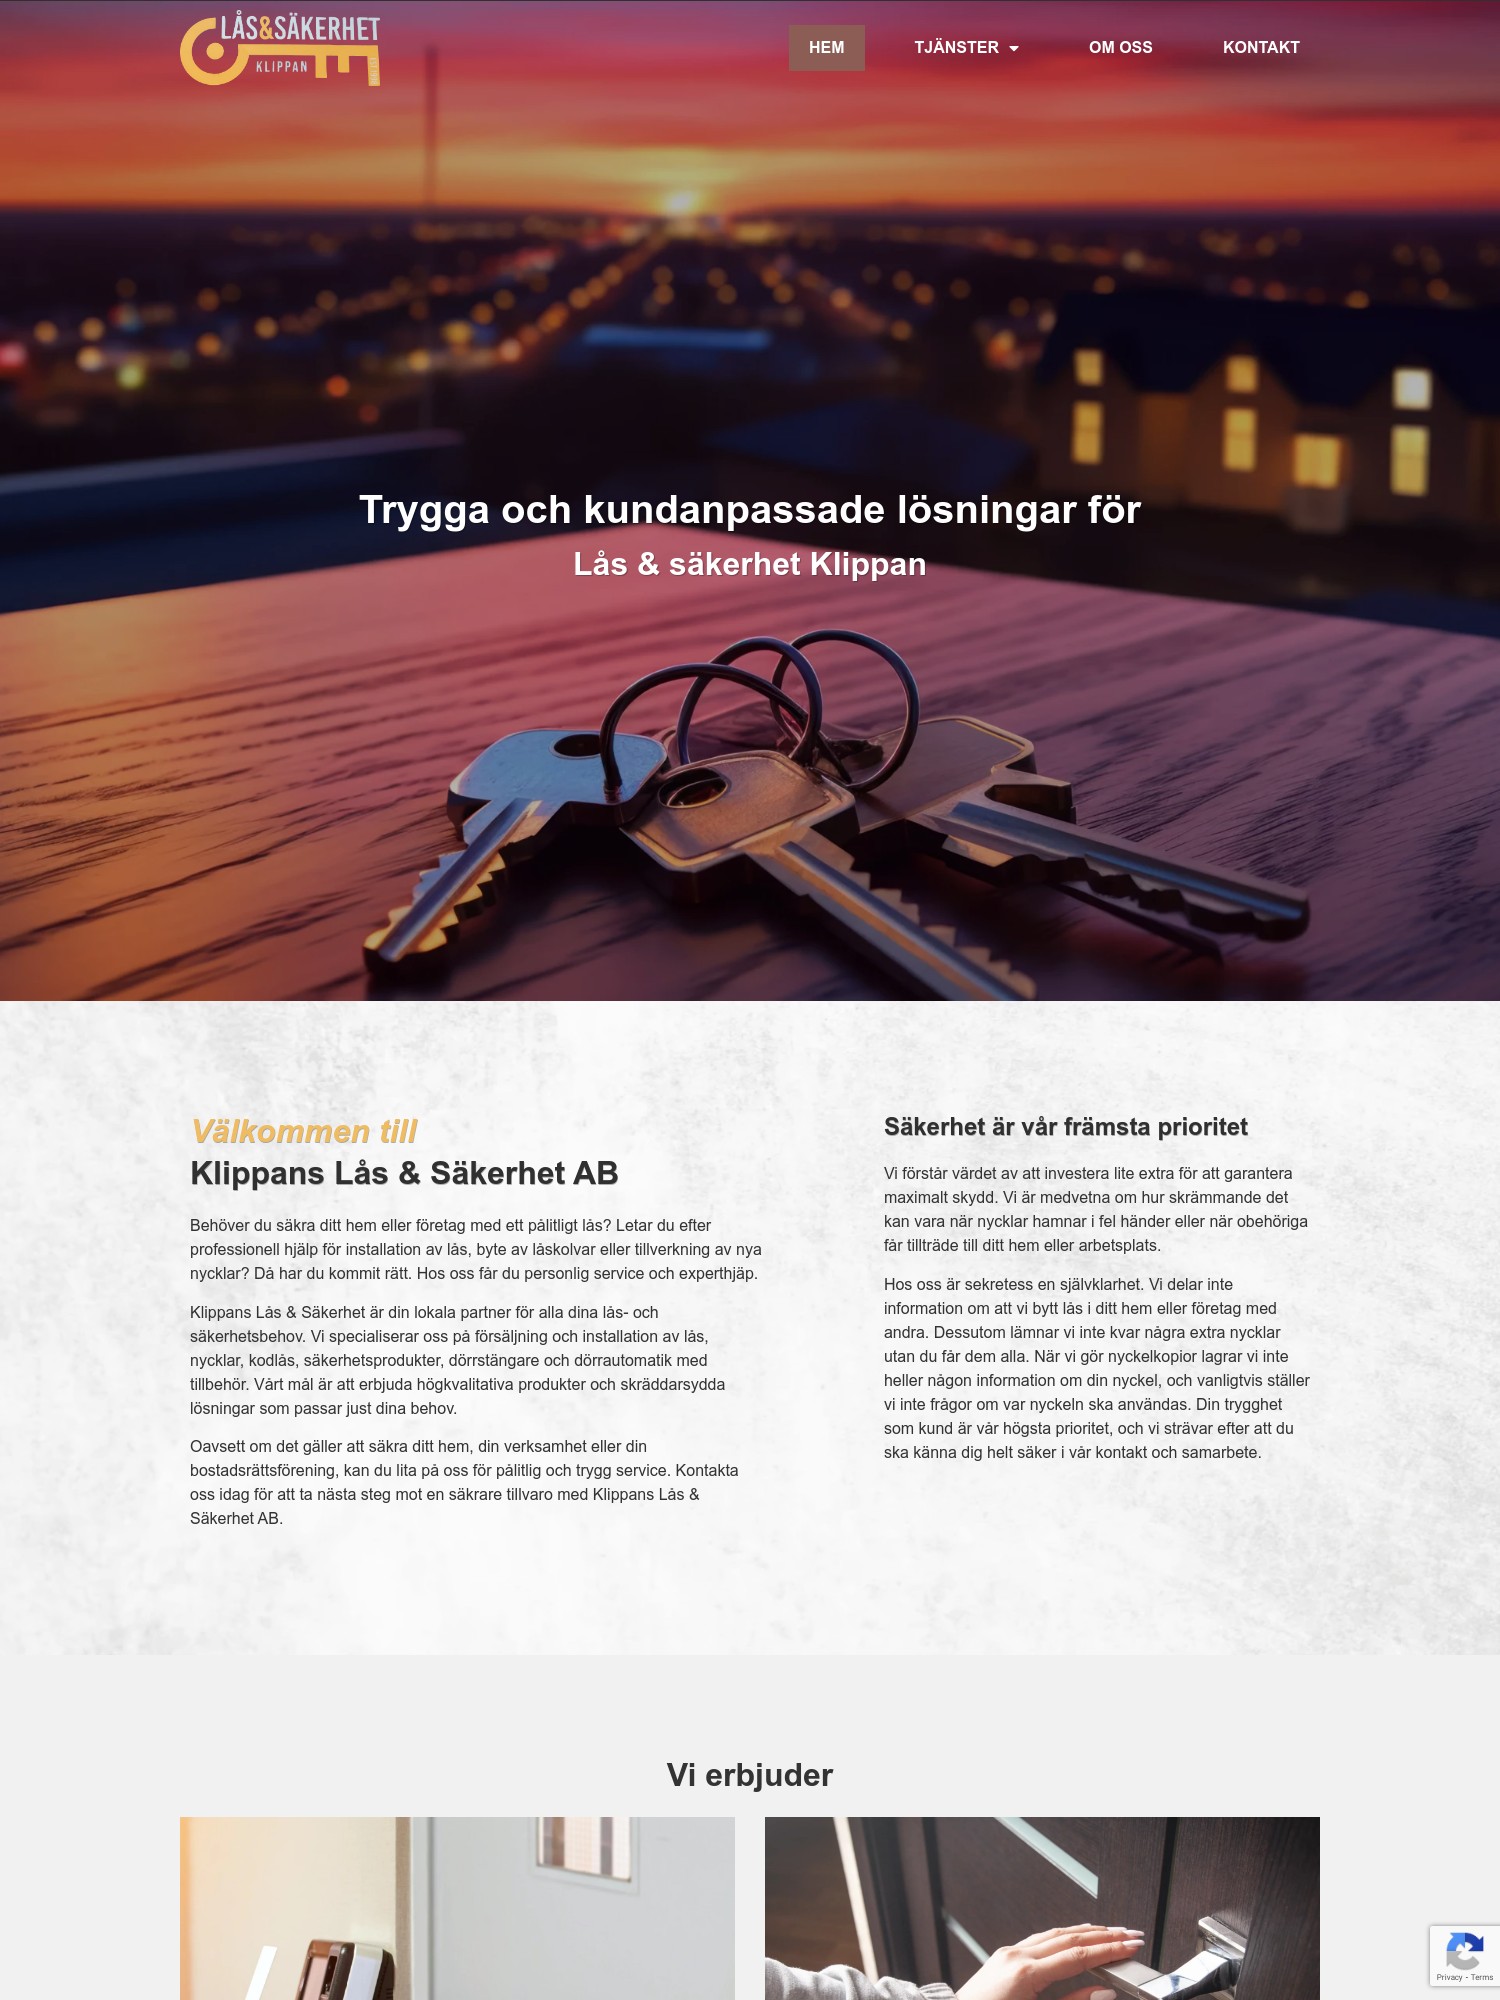 Klippanslas – Trygga och kundanpassade losningar for Las sakerhet Klippan Interwebsite Webbyrå